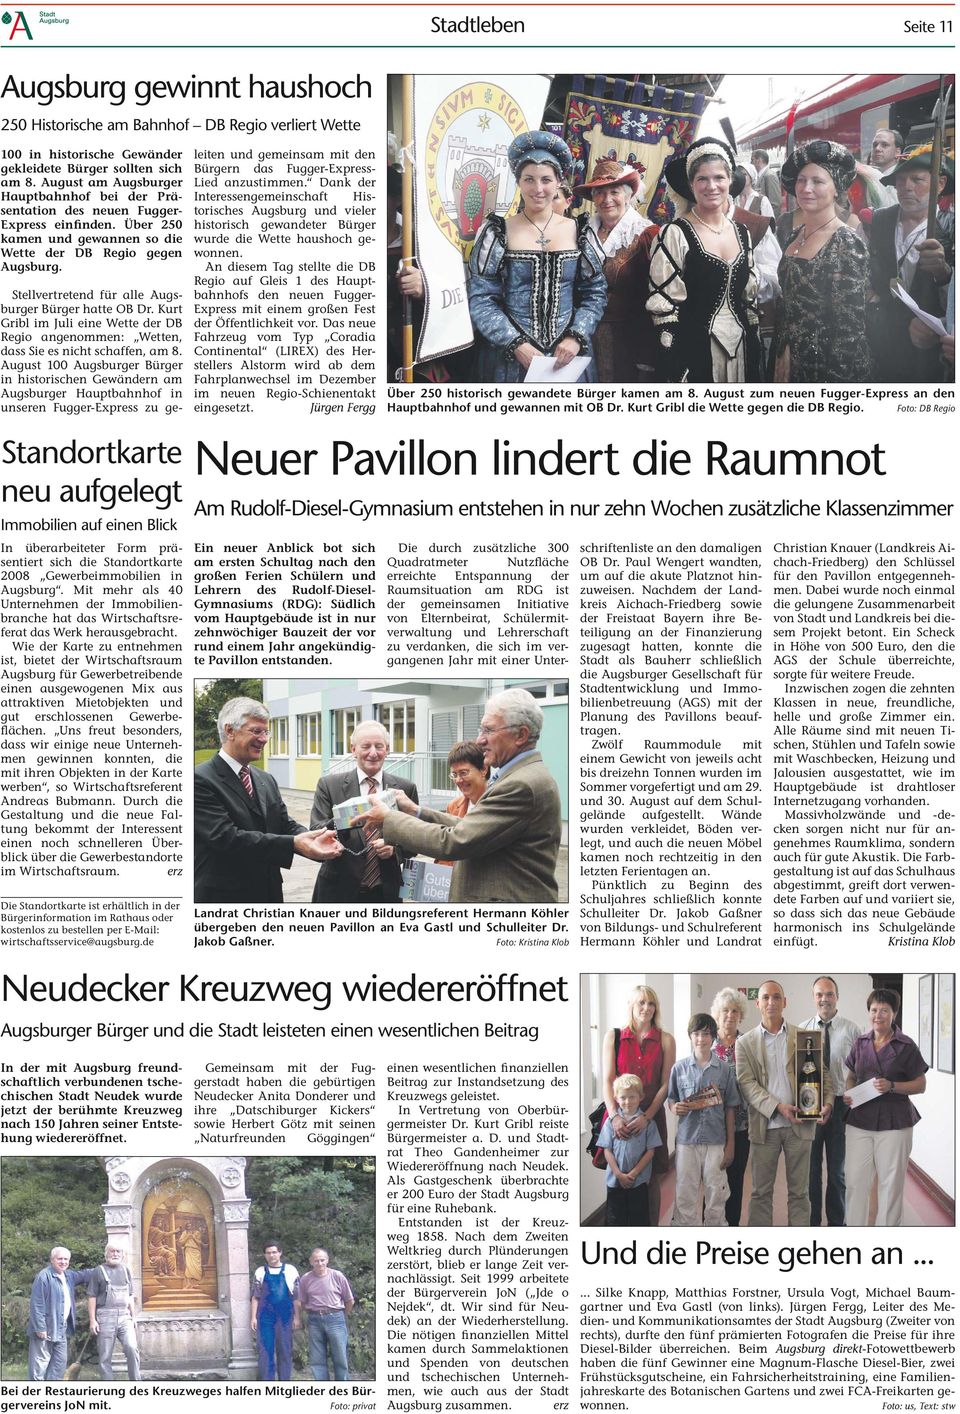 Stellvertretend für alle Augsburger Bürger hatte OB Dr. Kurt Gribl im Juli eine Wette der DB Regio angenommen: Wetten, dass Sie es nicht schaffen, am 8.